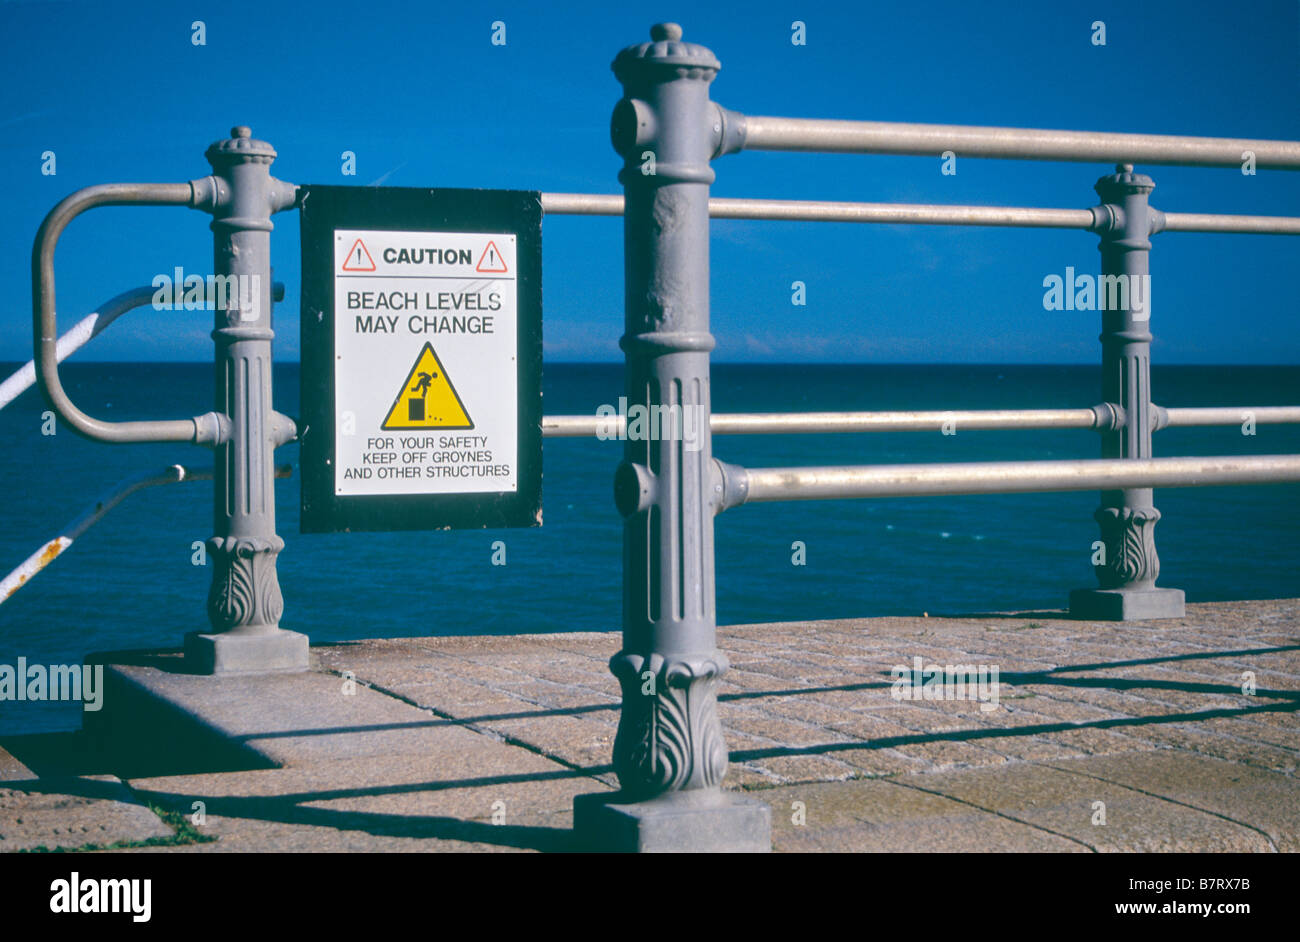 Attention : 'Beach élevés peuvent changer - Pour votre sécurité, restez à l'écart des éperons et autres structures' Banque D'Images